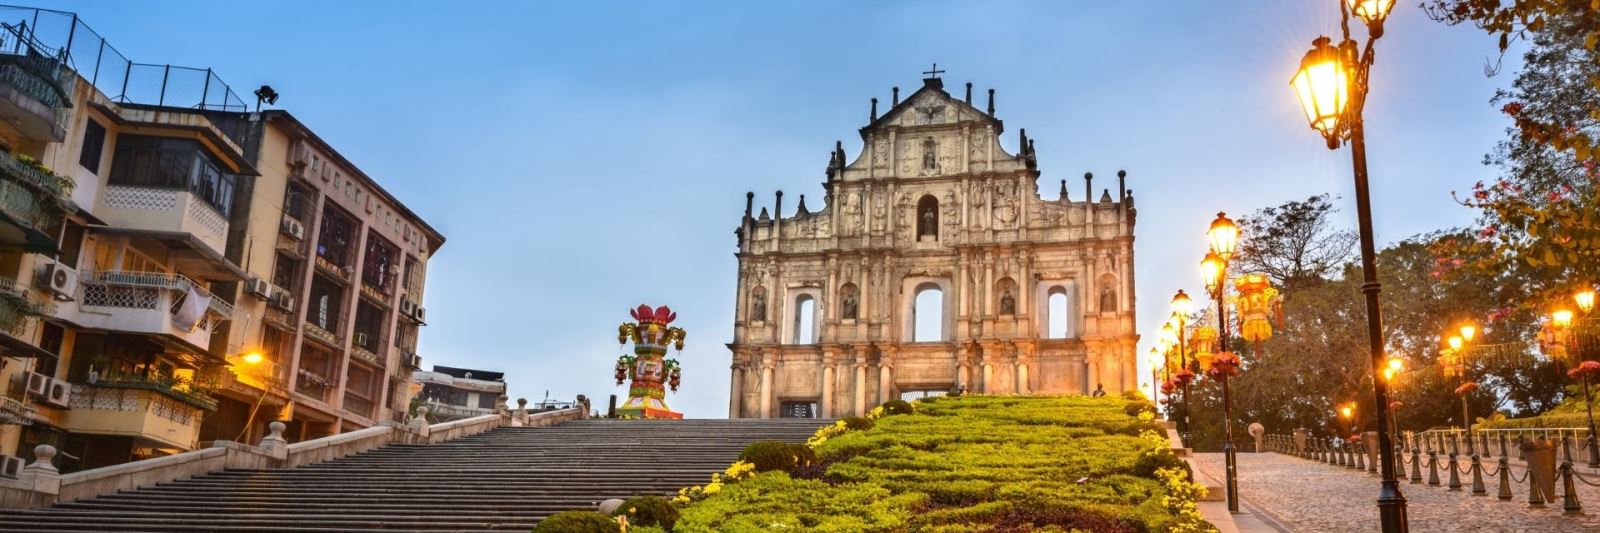 Di tích nhà thờ thánh Phaolô tại Macau. Ảnh: CTV